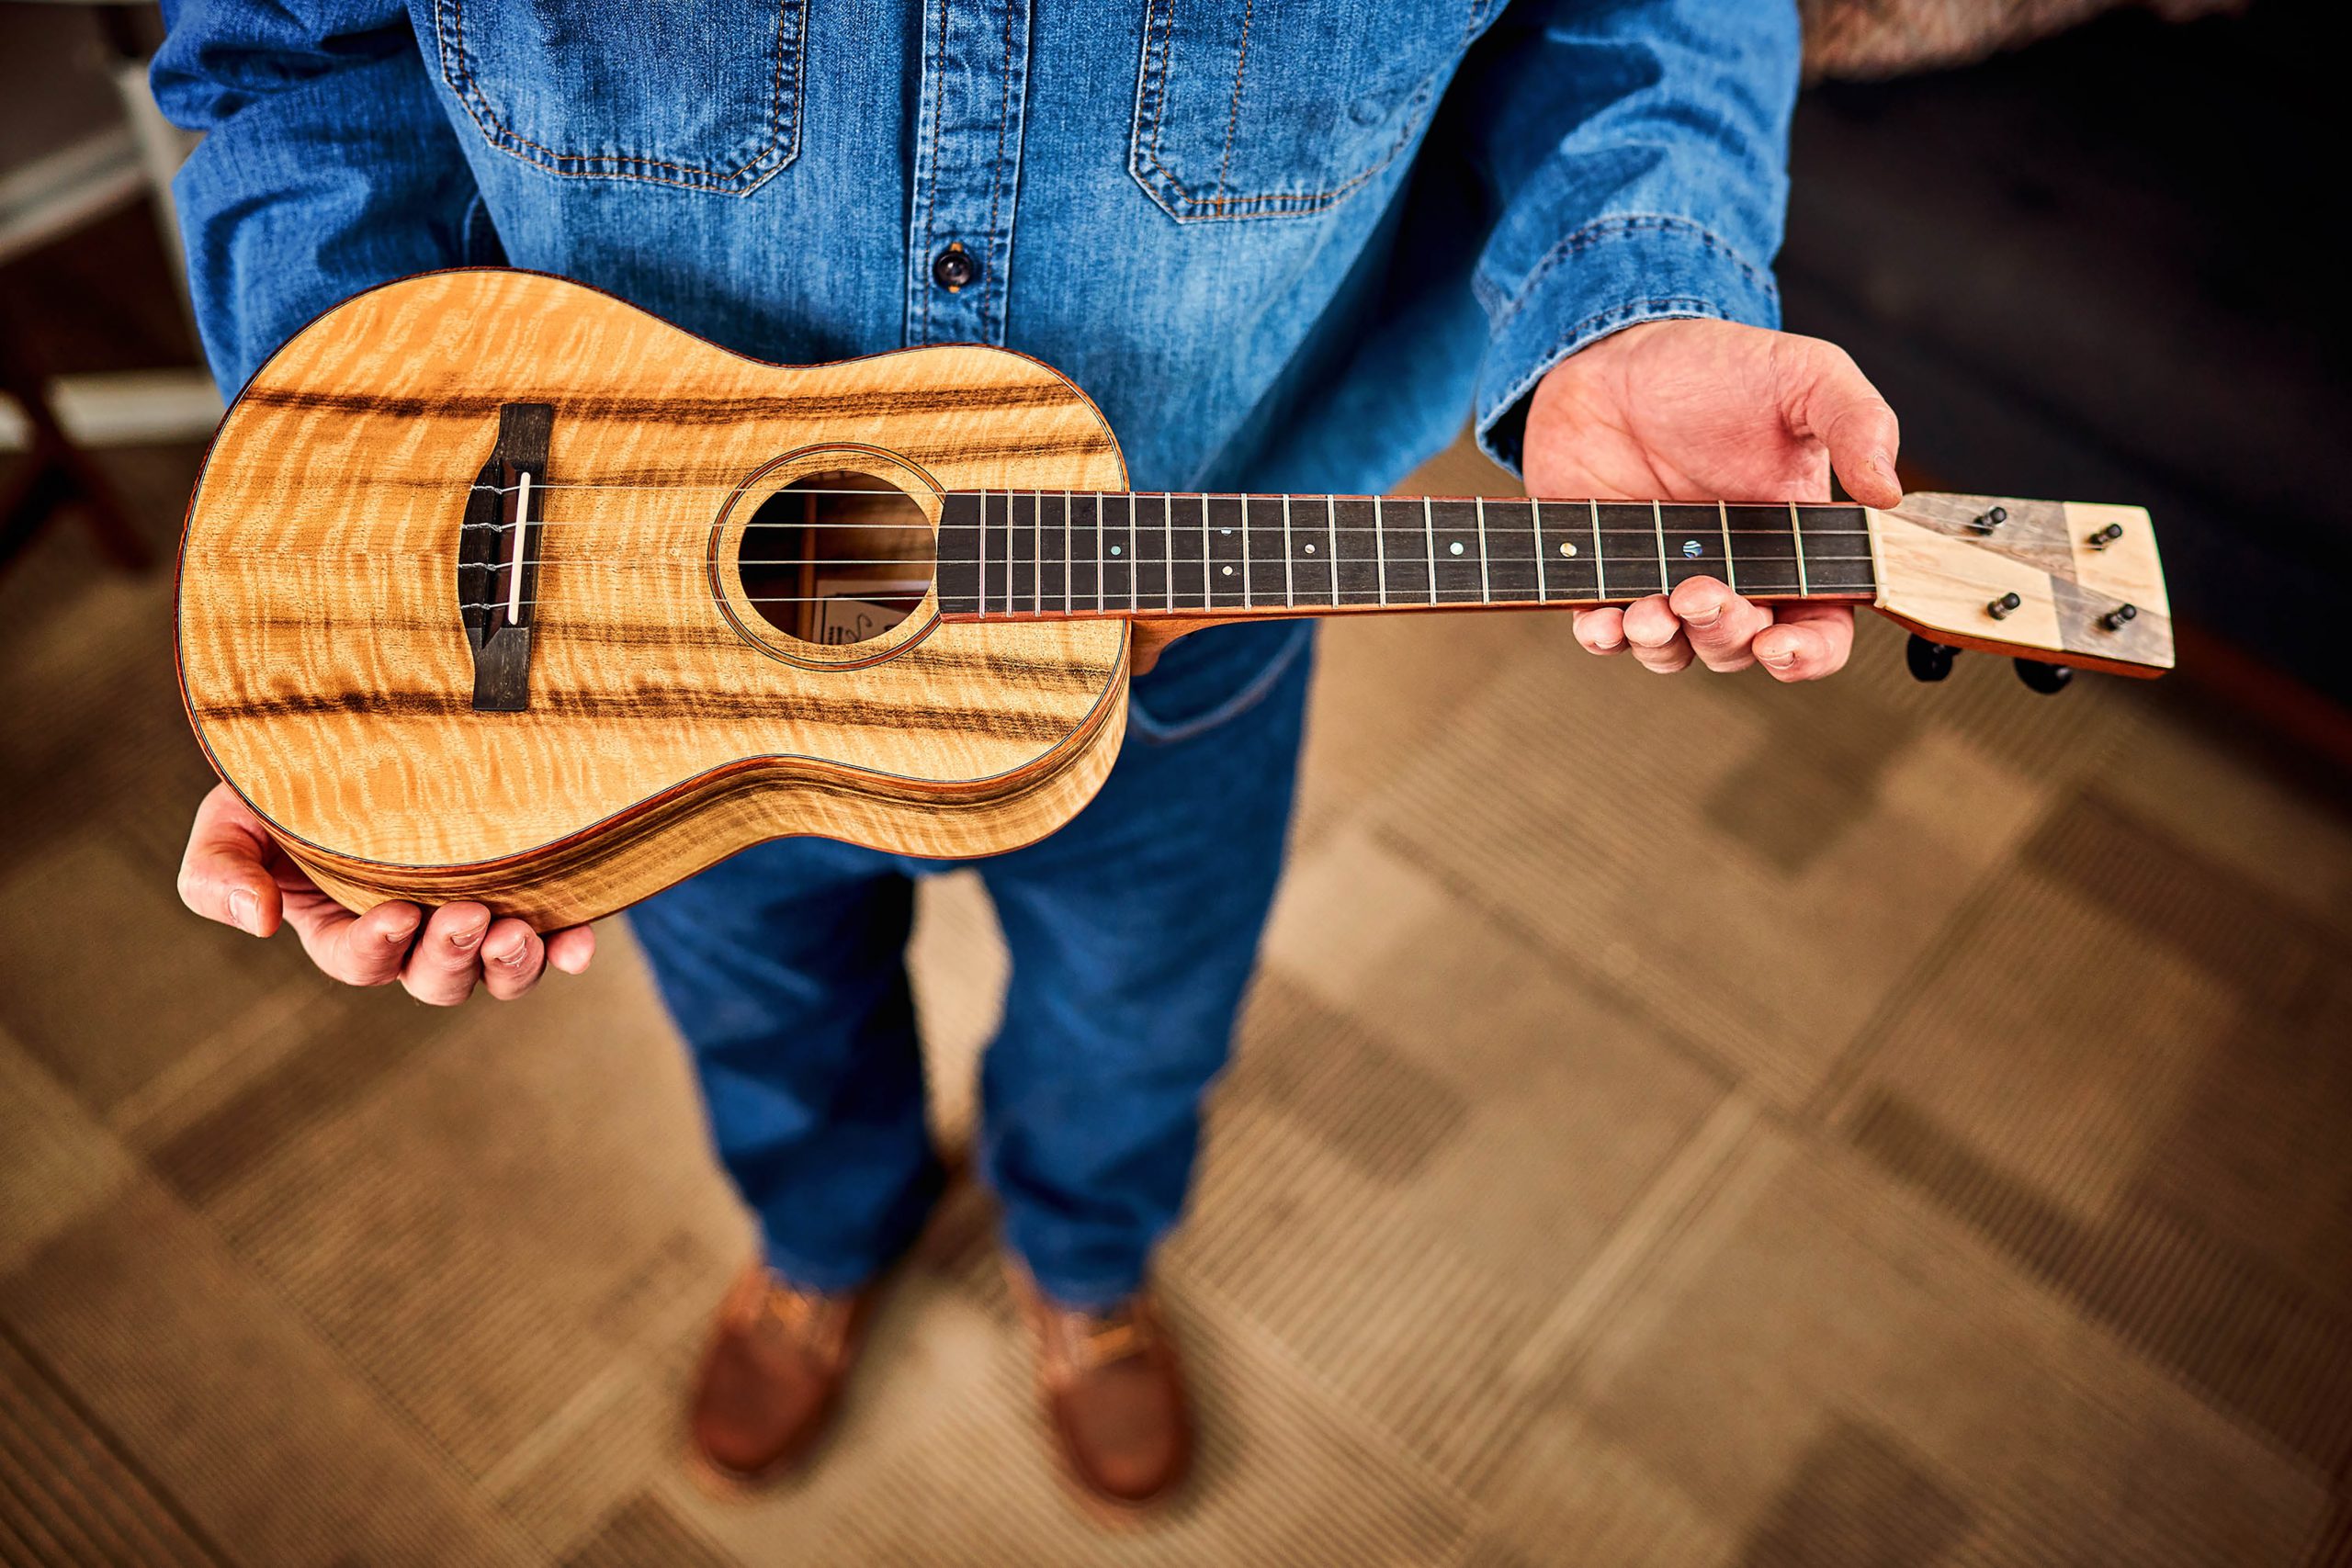 Mya-Moe ukuleles by Scott Edwards